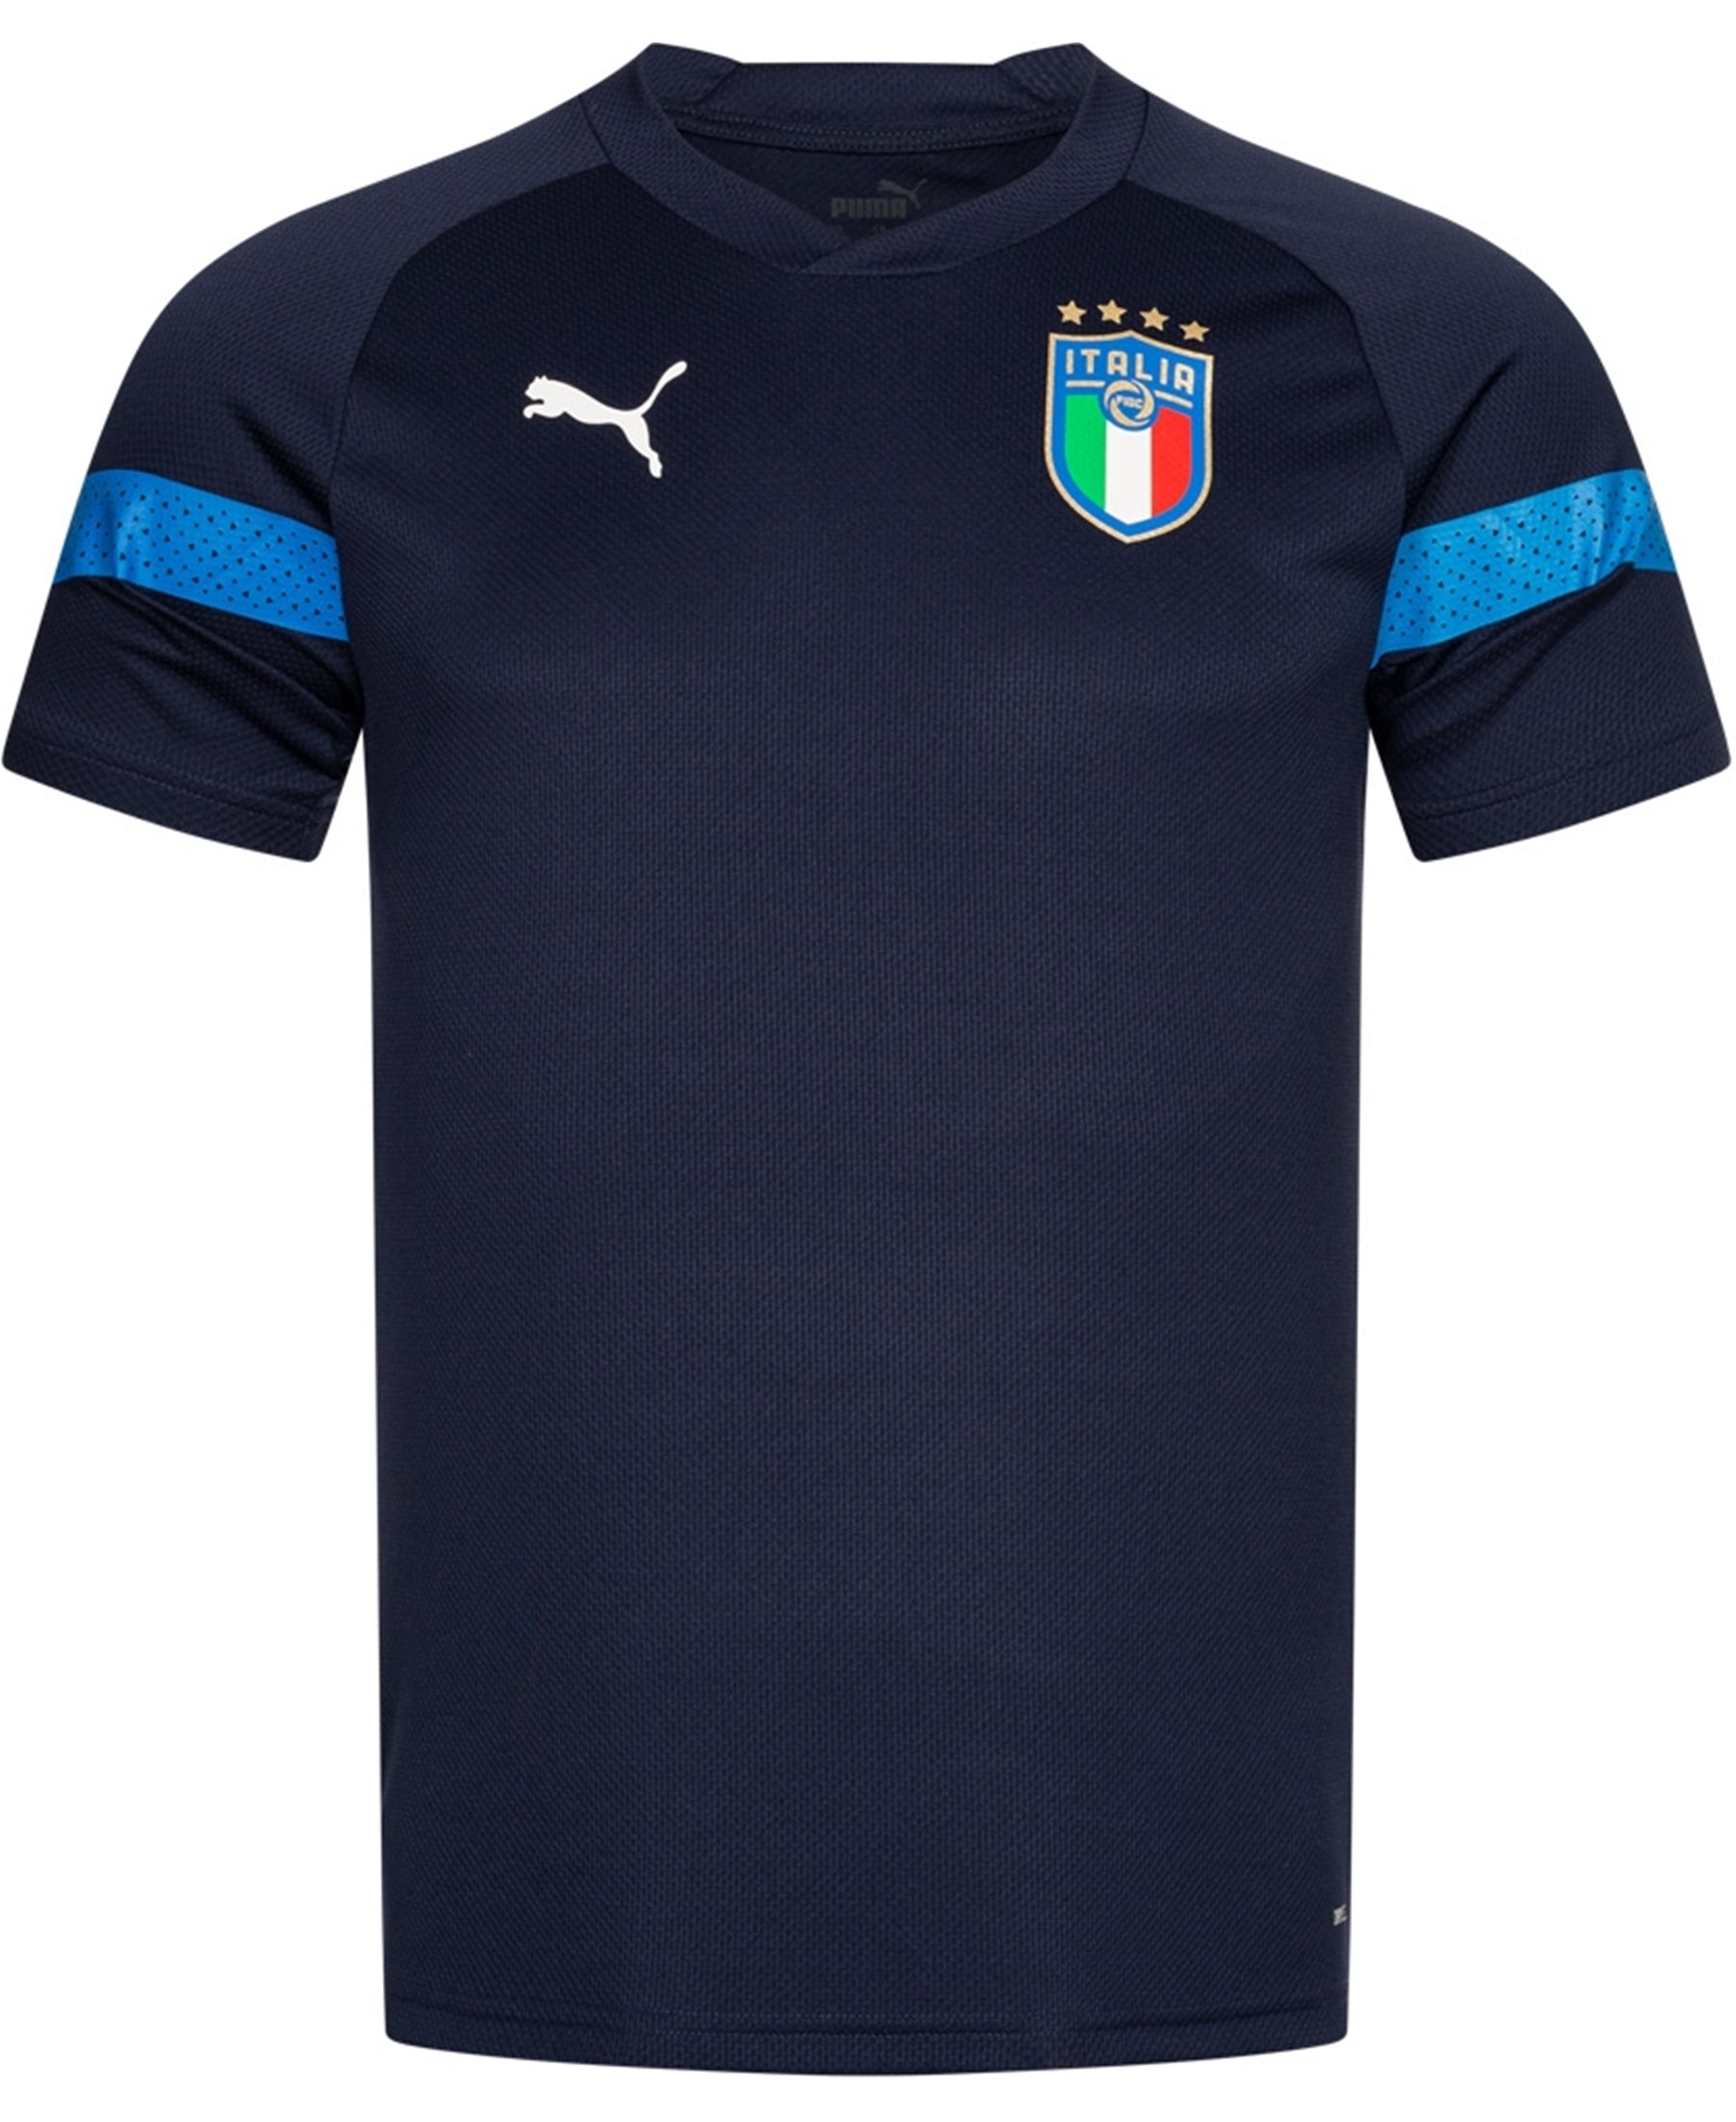 Erhalten Sie das Puma Italien Coach Trainingsshirt 2022-2023 (767081-04) bei SHOP4TEAMSPORT, dem ultimativen Ziel für Fußballfans. Zeigen Sie Ihre Unterstützung für die Azzurri mit dem offiziellen FIGC-Logo und genießen Sie den Komfort und die Atmungsaktivität dieses hochfunktionellen Trainingsshirts. Holen Sie sich jetzt Ihren italienischen Fußballstil!